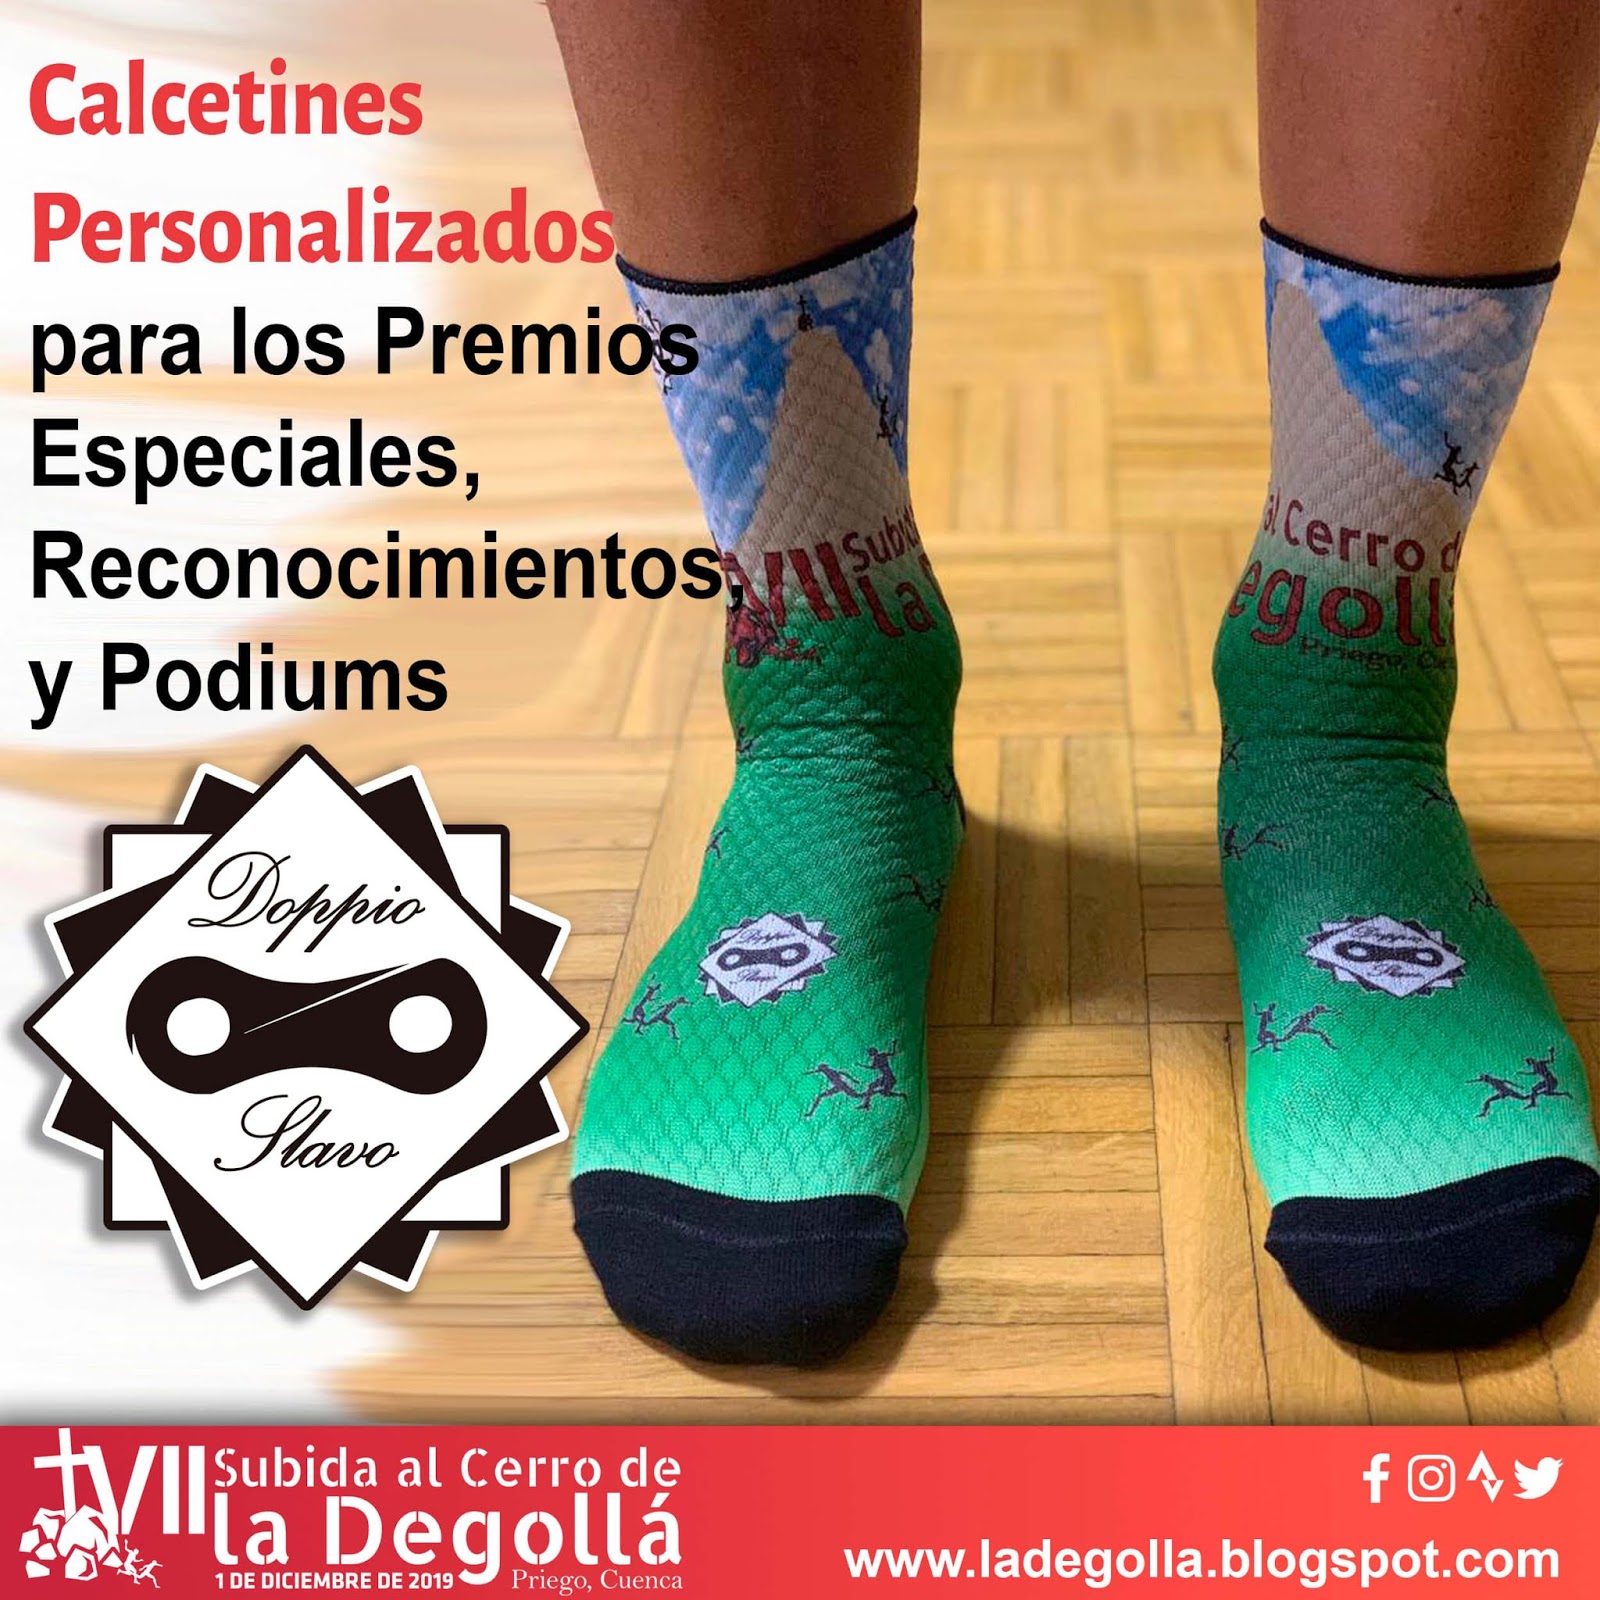 al Cerro de la Doppio Slavo ha realizado calcetines personalizados para Degollá